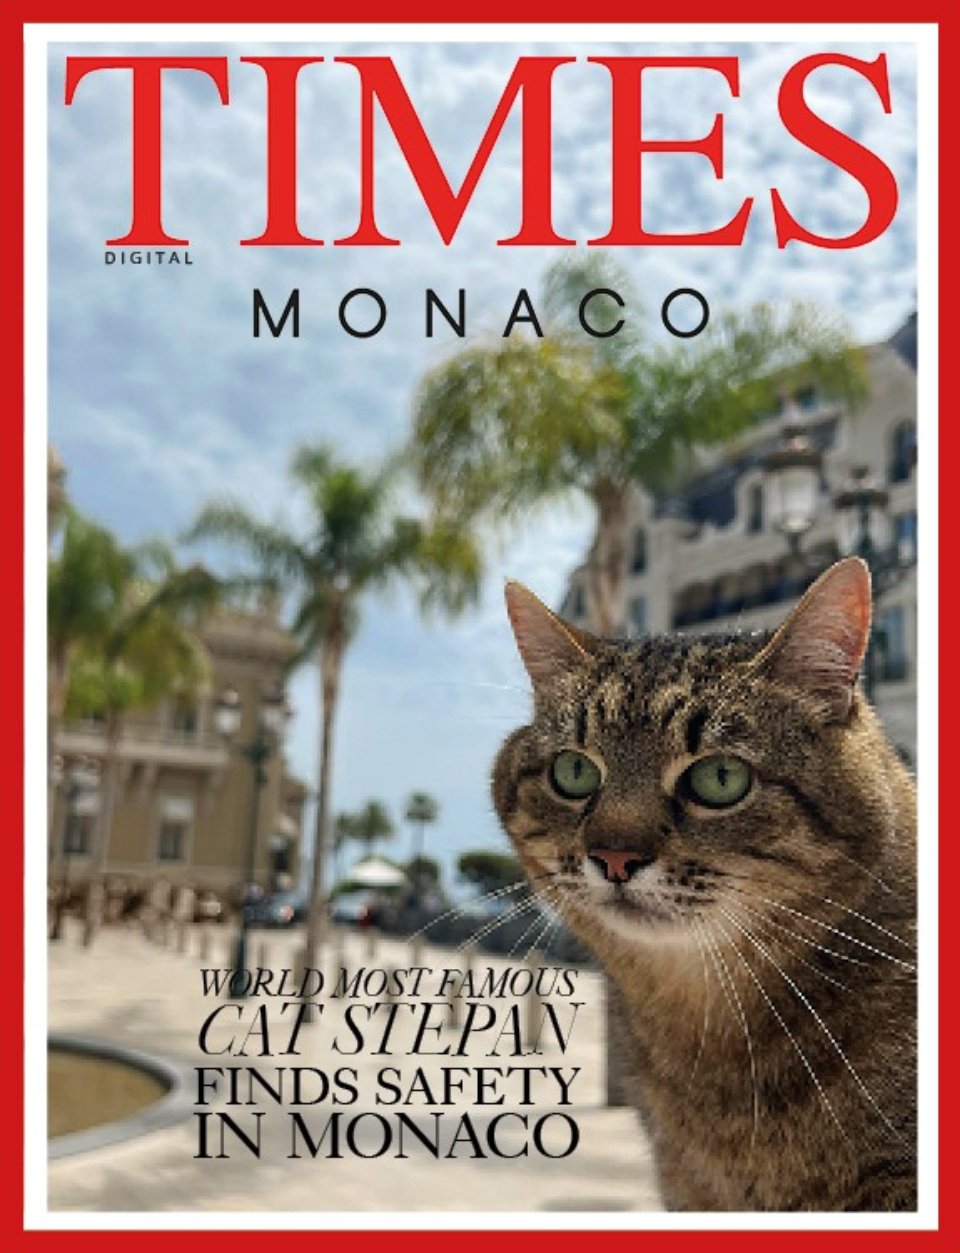 Кіт Степан став обличчям обкладинки журналу Times Monaco